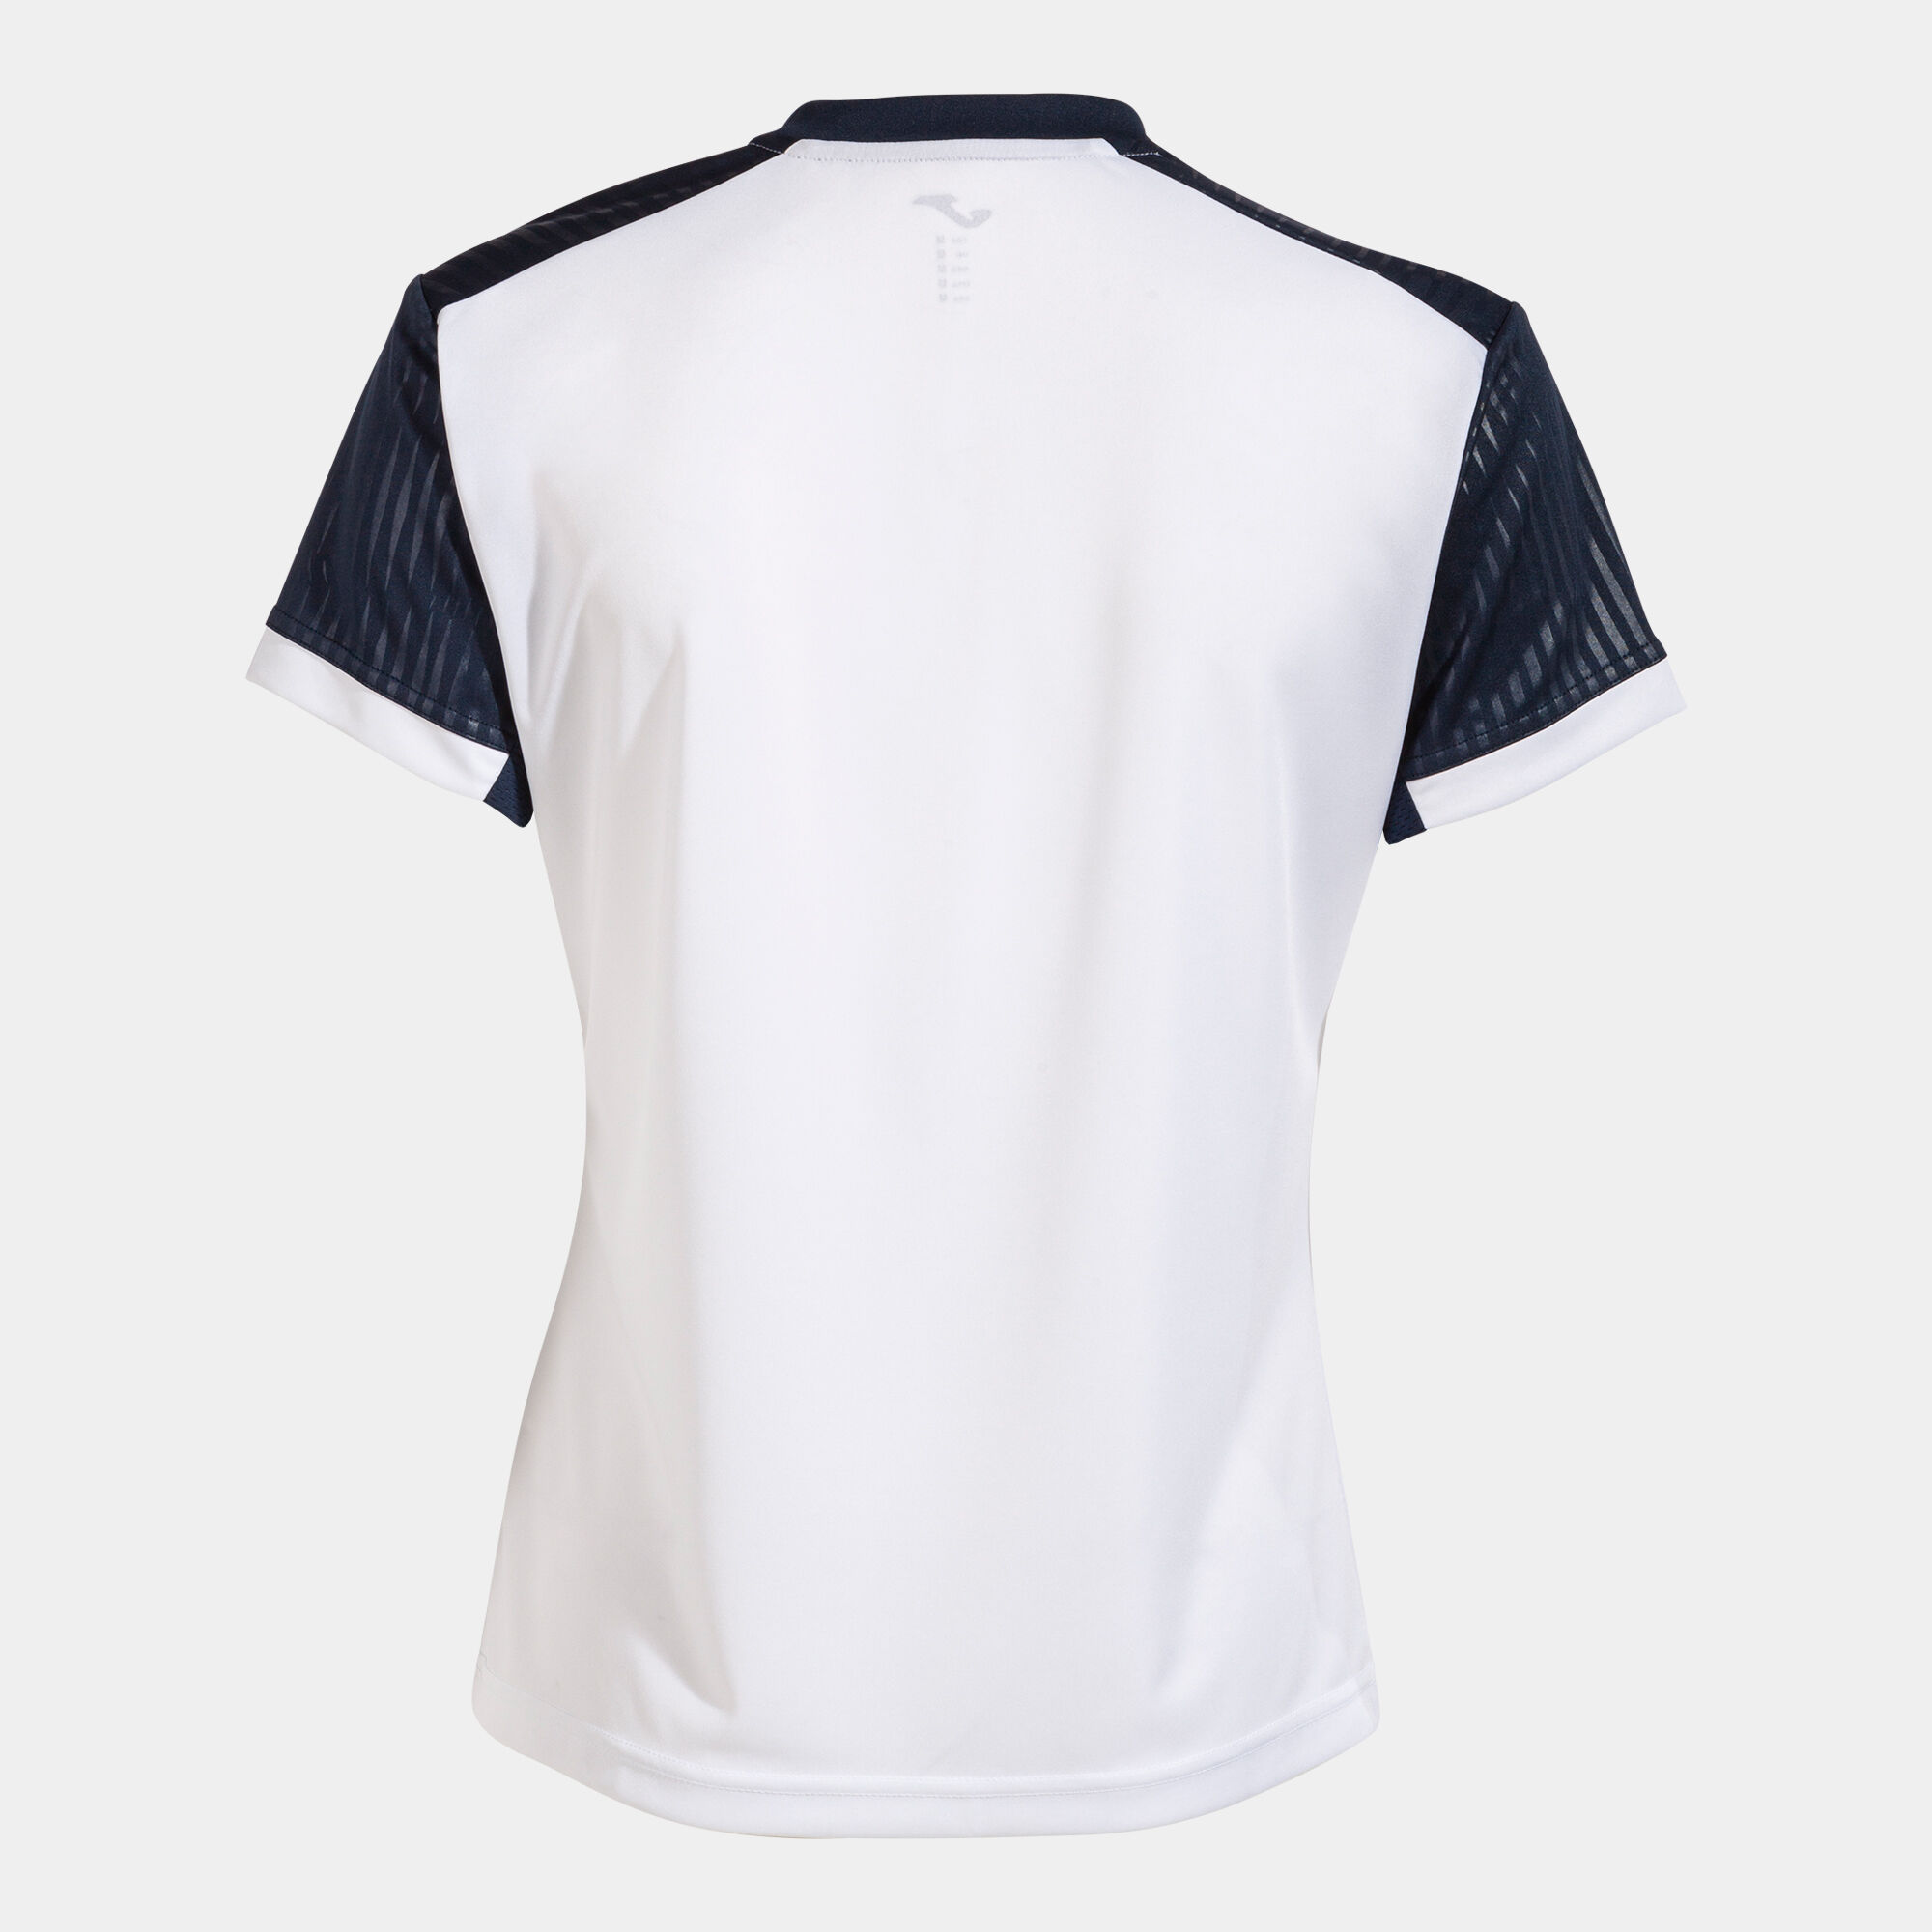 Camiseta manga corta mujer Montreal blanco marino